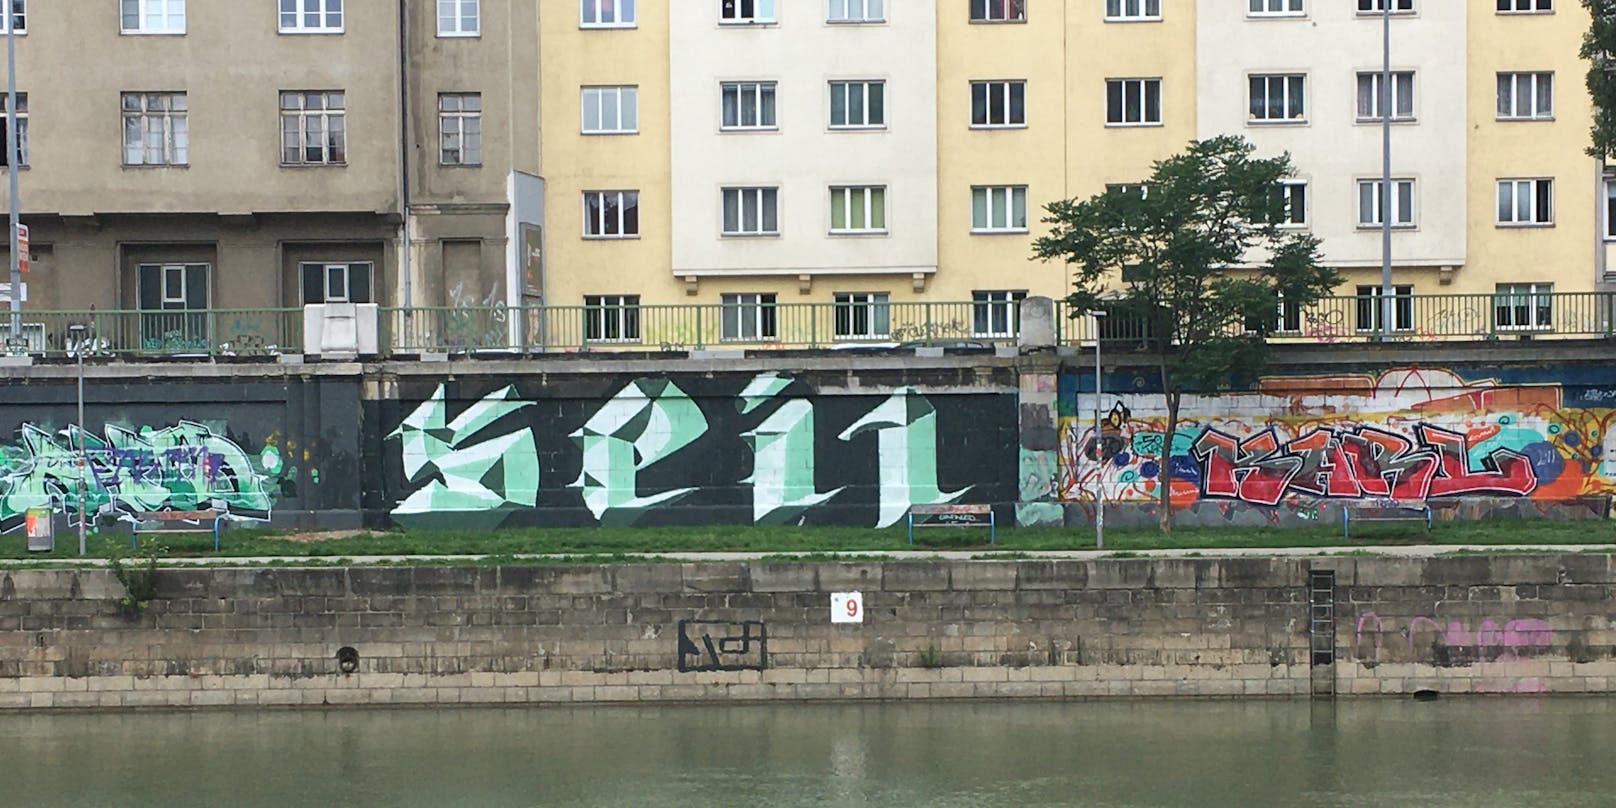 Einige interpretieren das Graffiti als Hakenkreuz und den Schriftzug "Heil".